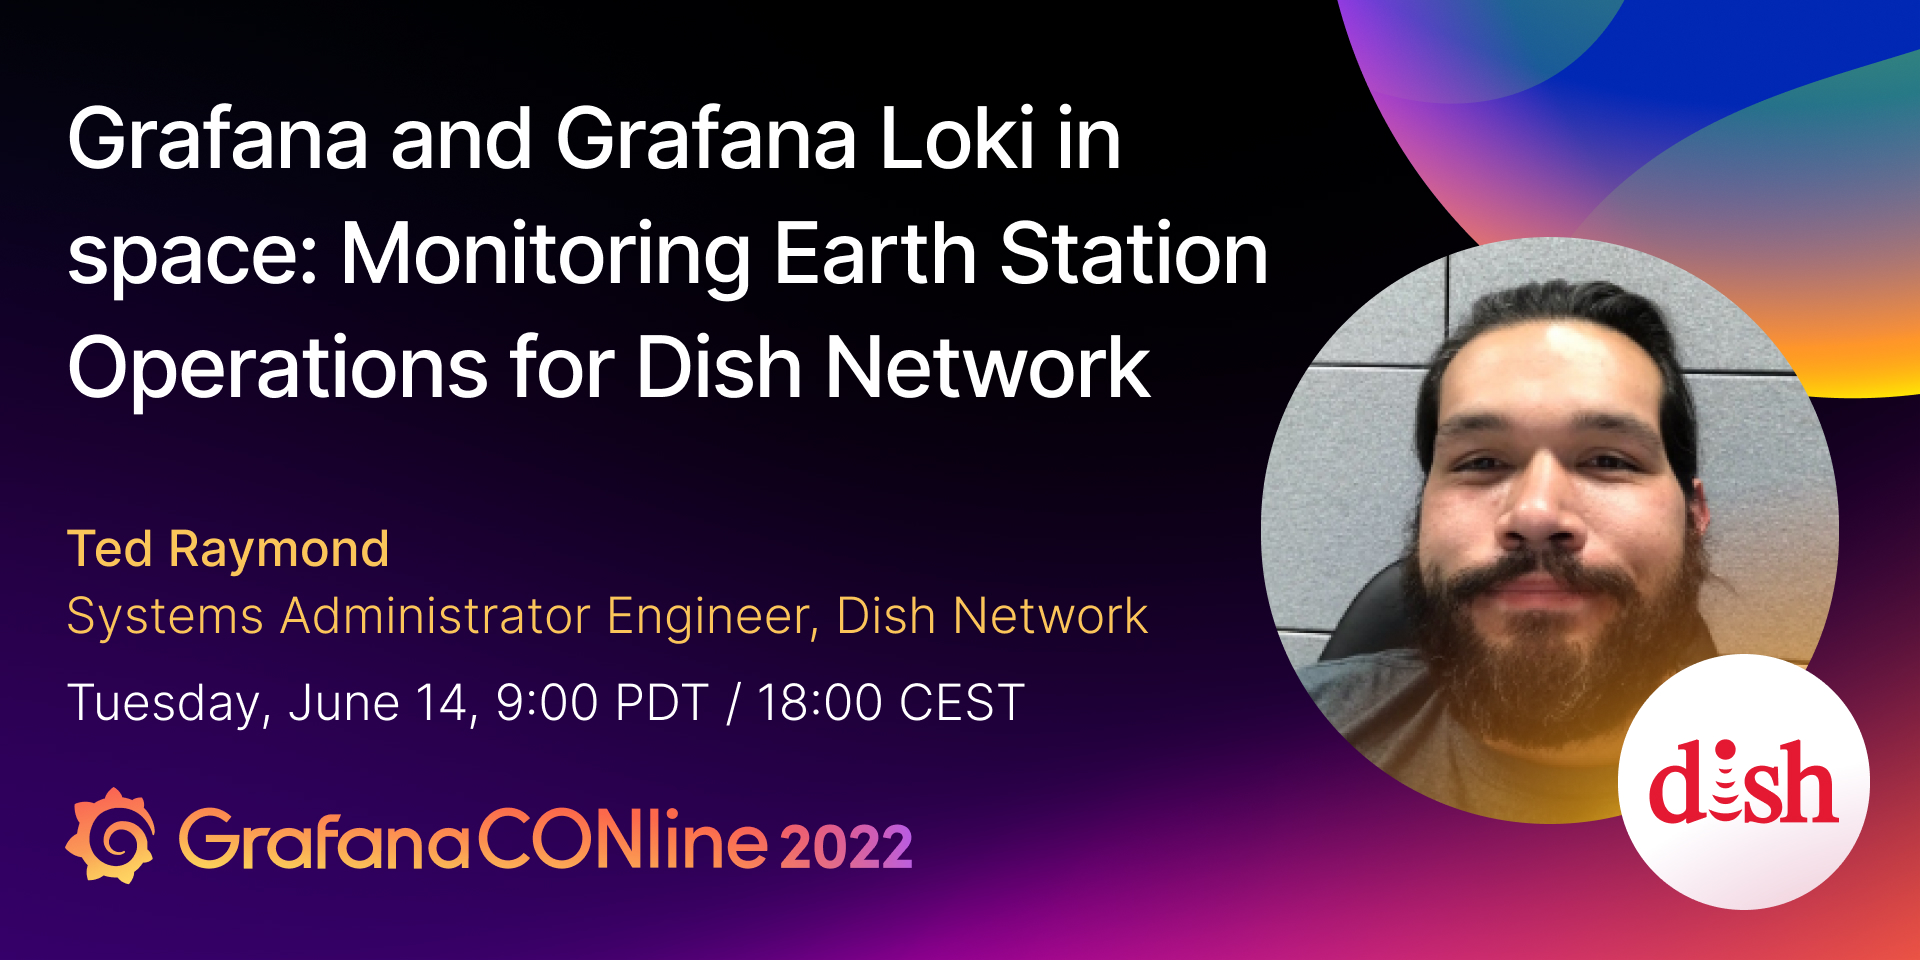 太空中的Grafana和Grafana Loki:监测Dish网络的地面站操作